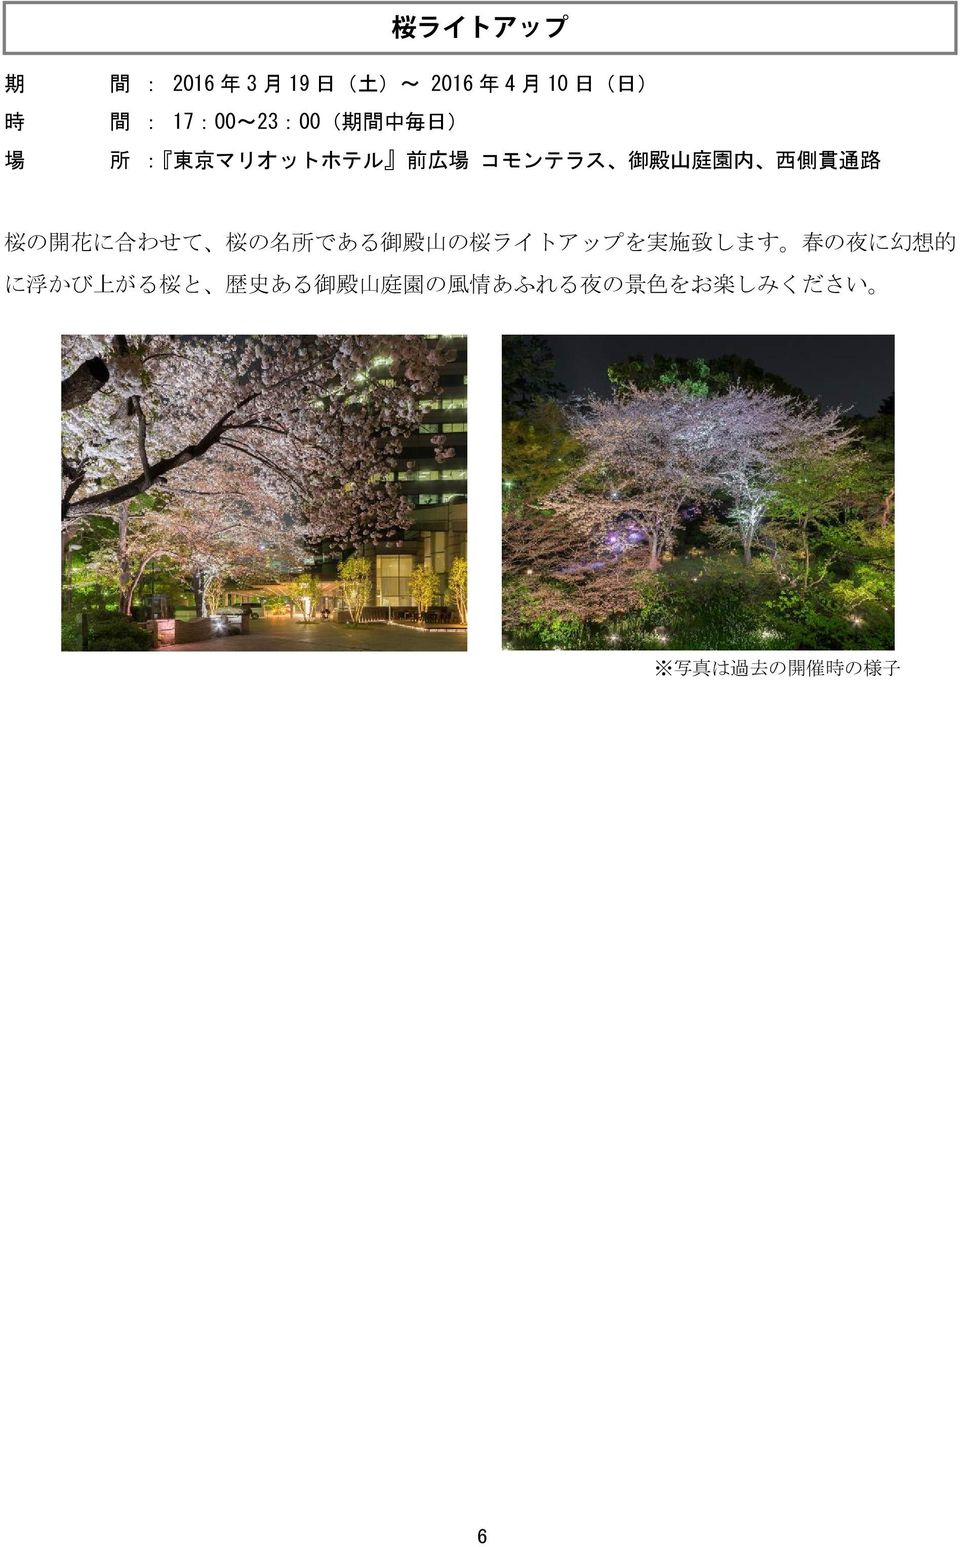 わせて 桜 の 名 所 である 御 殿 山 の 桜 ライトアップを 実 施 致 します 春 の 夜 に 幻 想 的 に 浮 かび 上 がる 桜 と